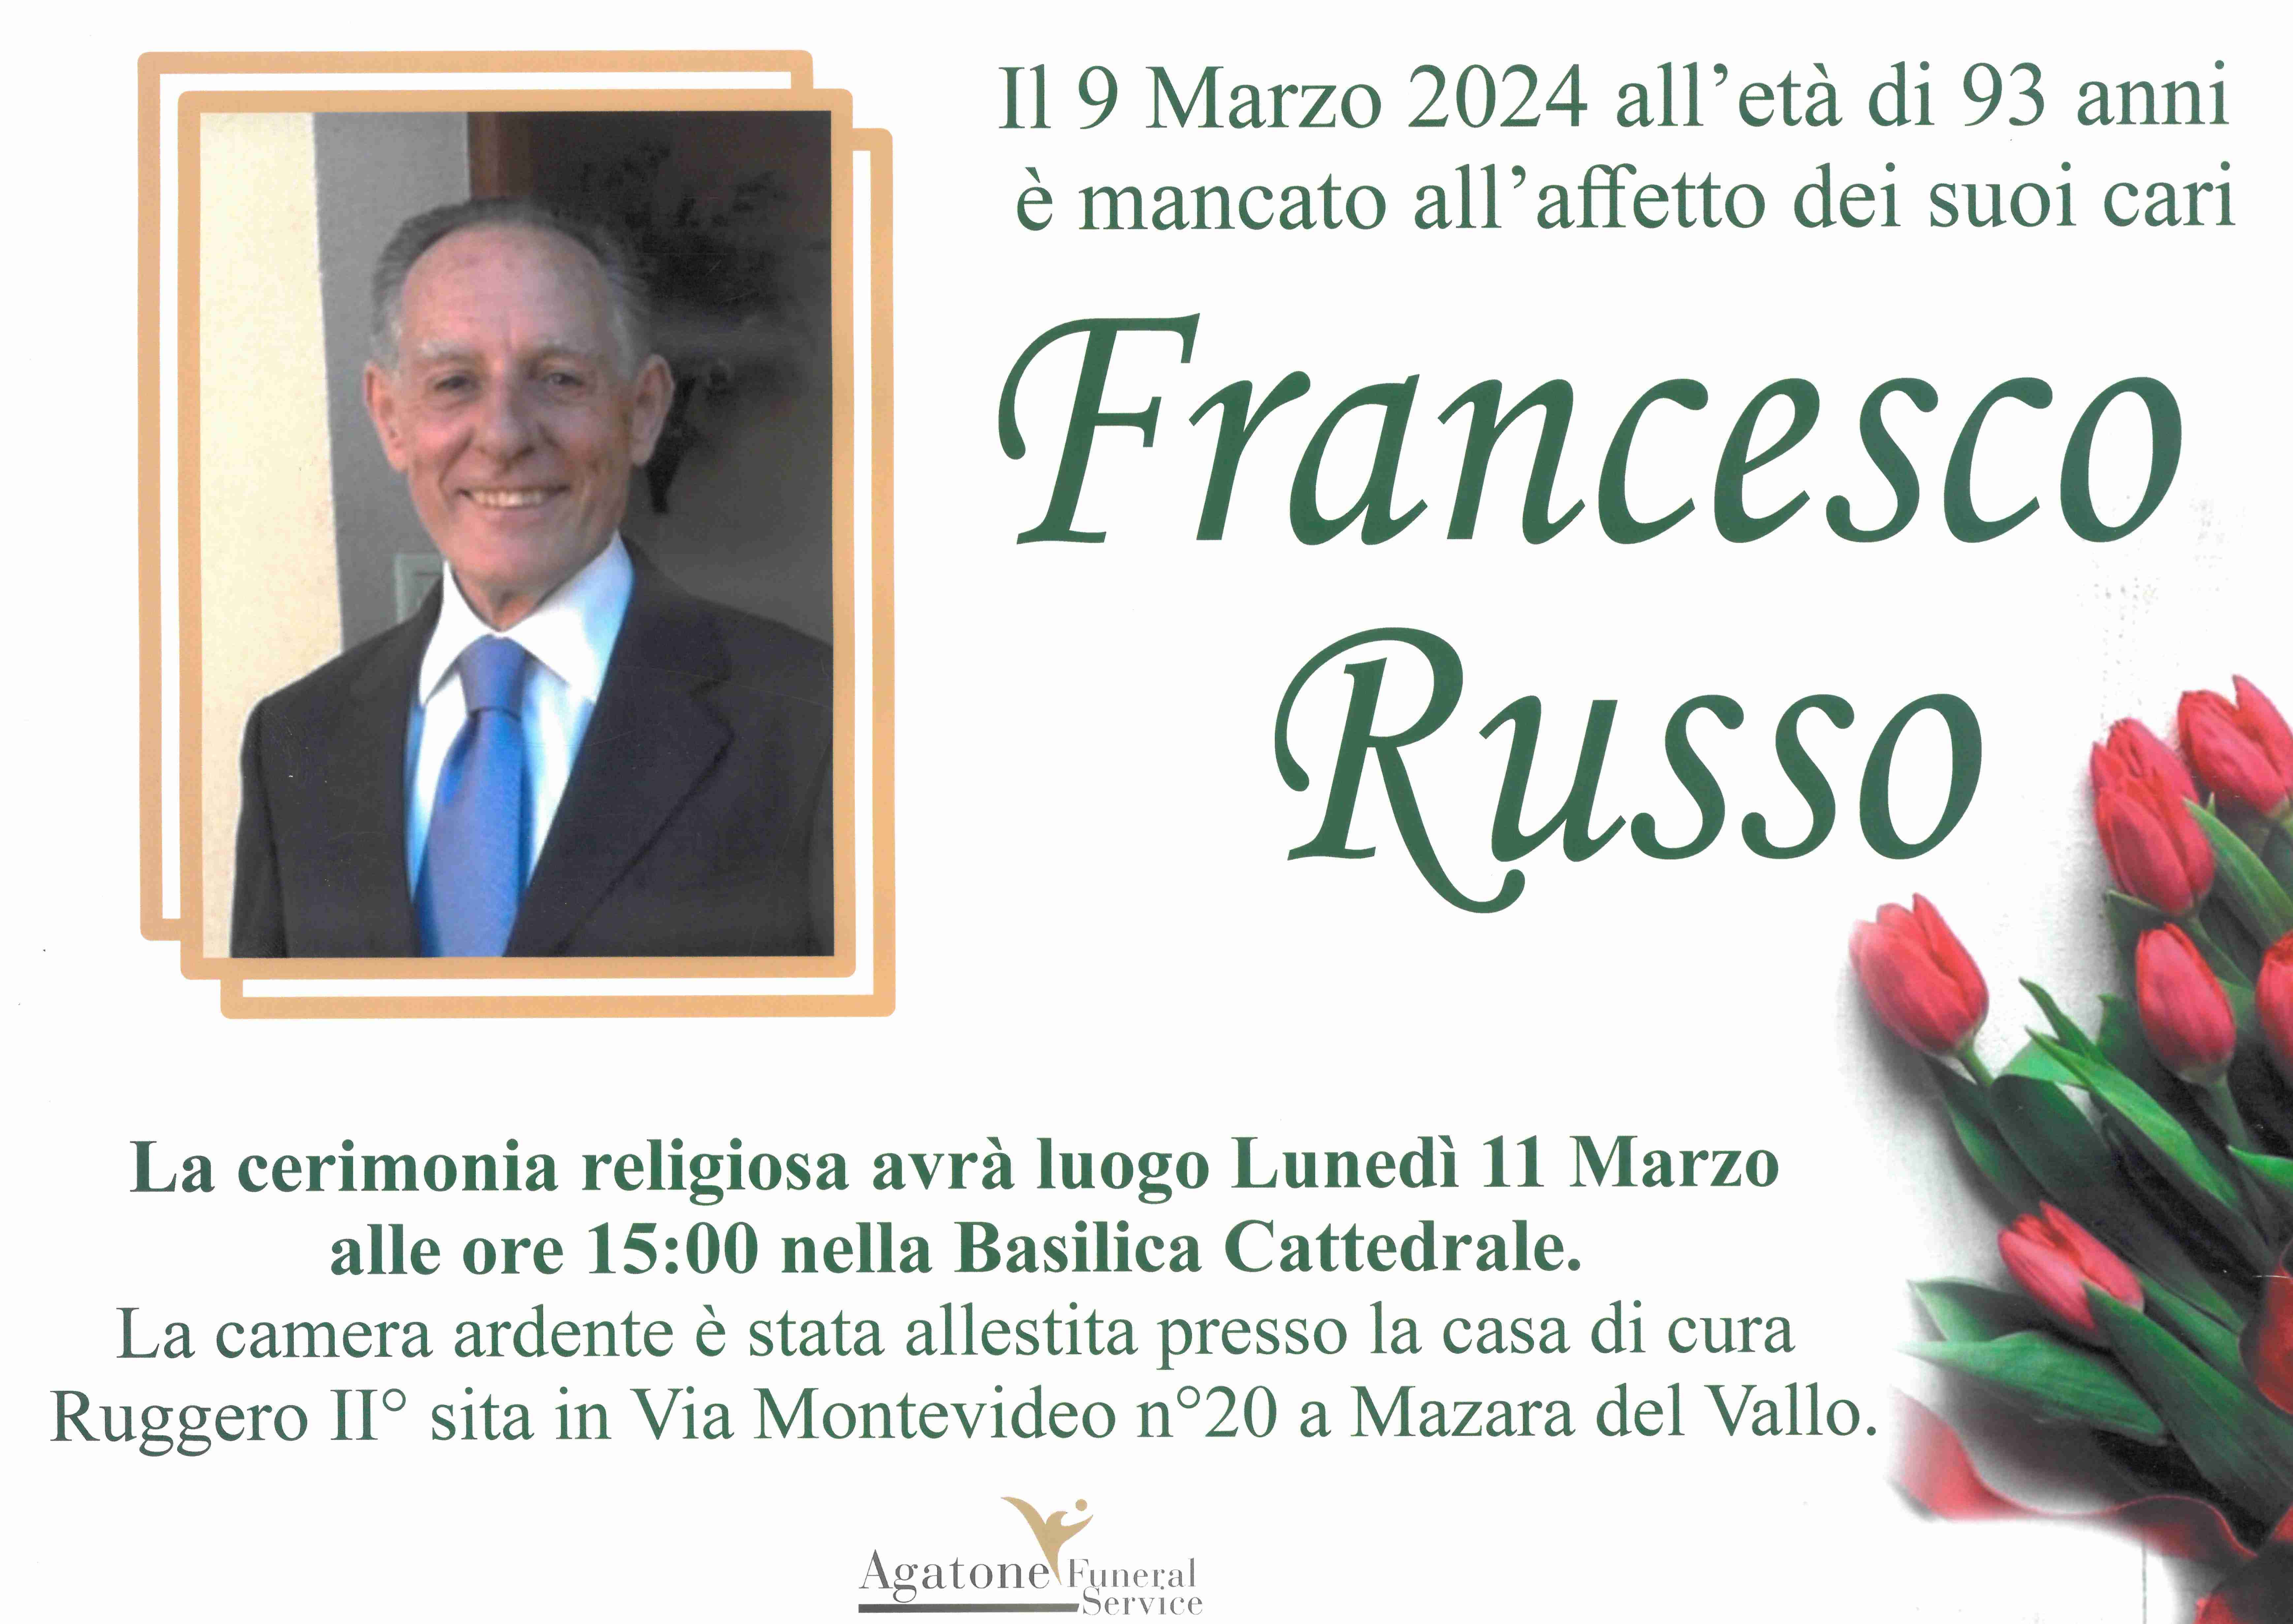 Francesco Russo